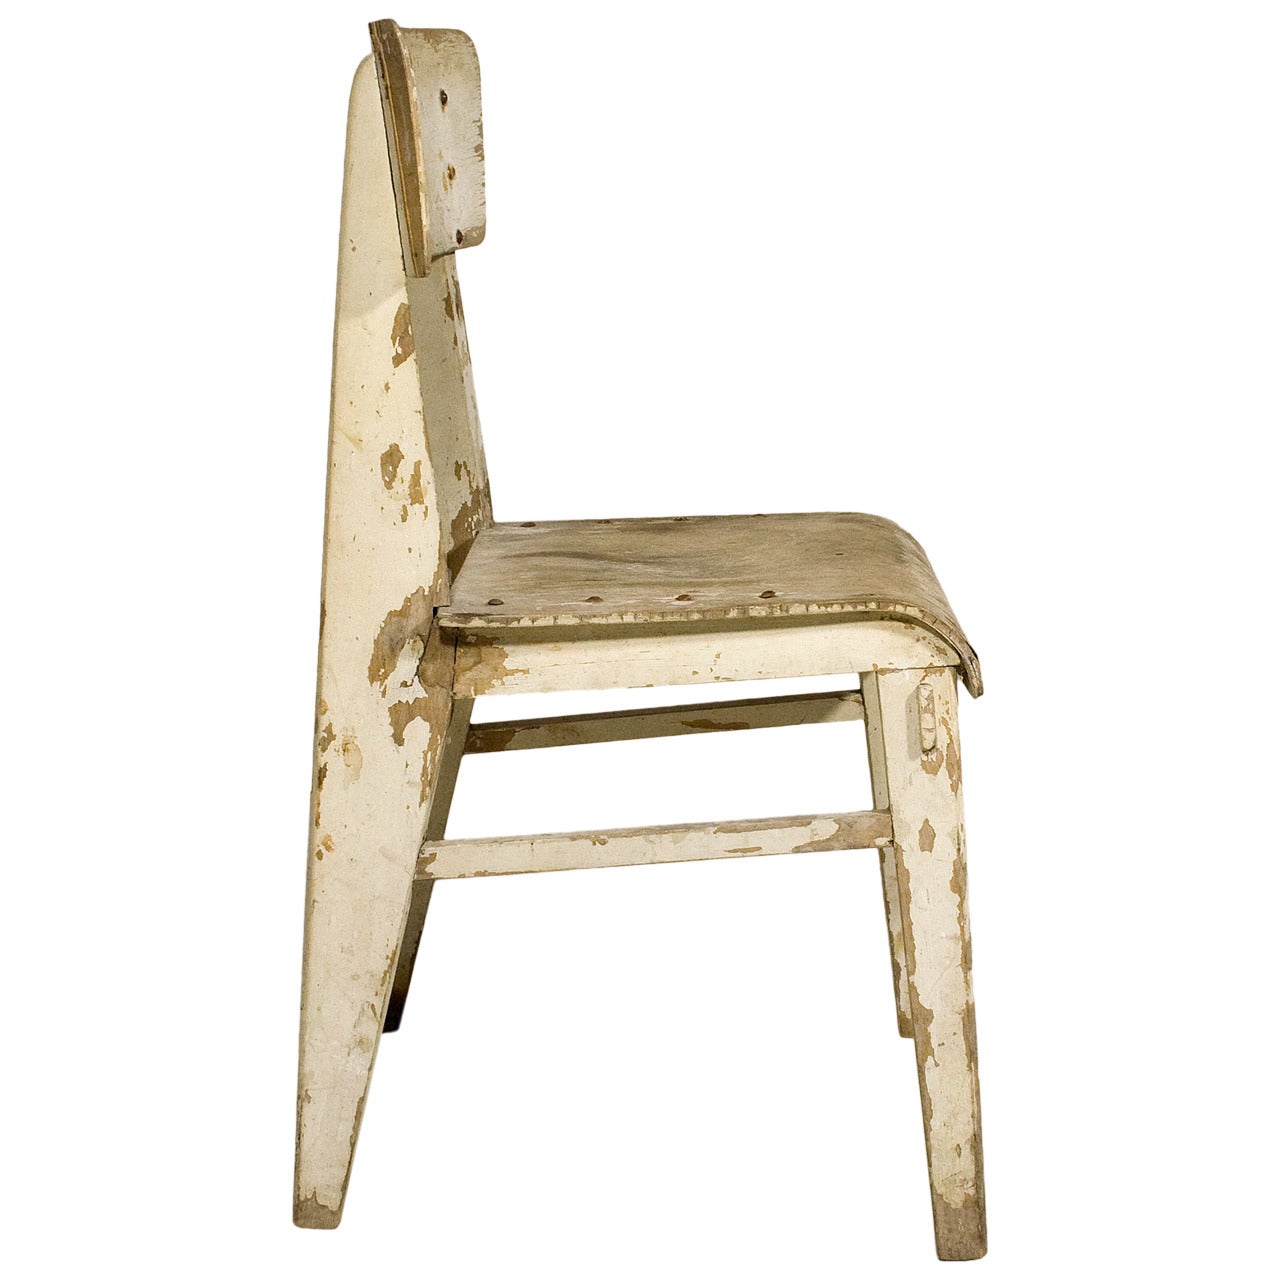 Jean Prouve "Chaise en Bois", Wooden Standard Chair, circa 1940, France